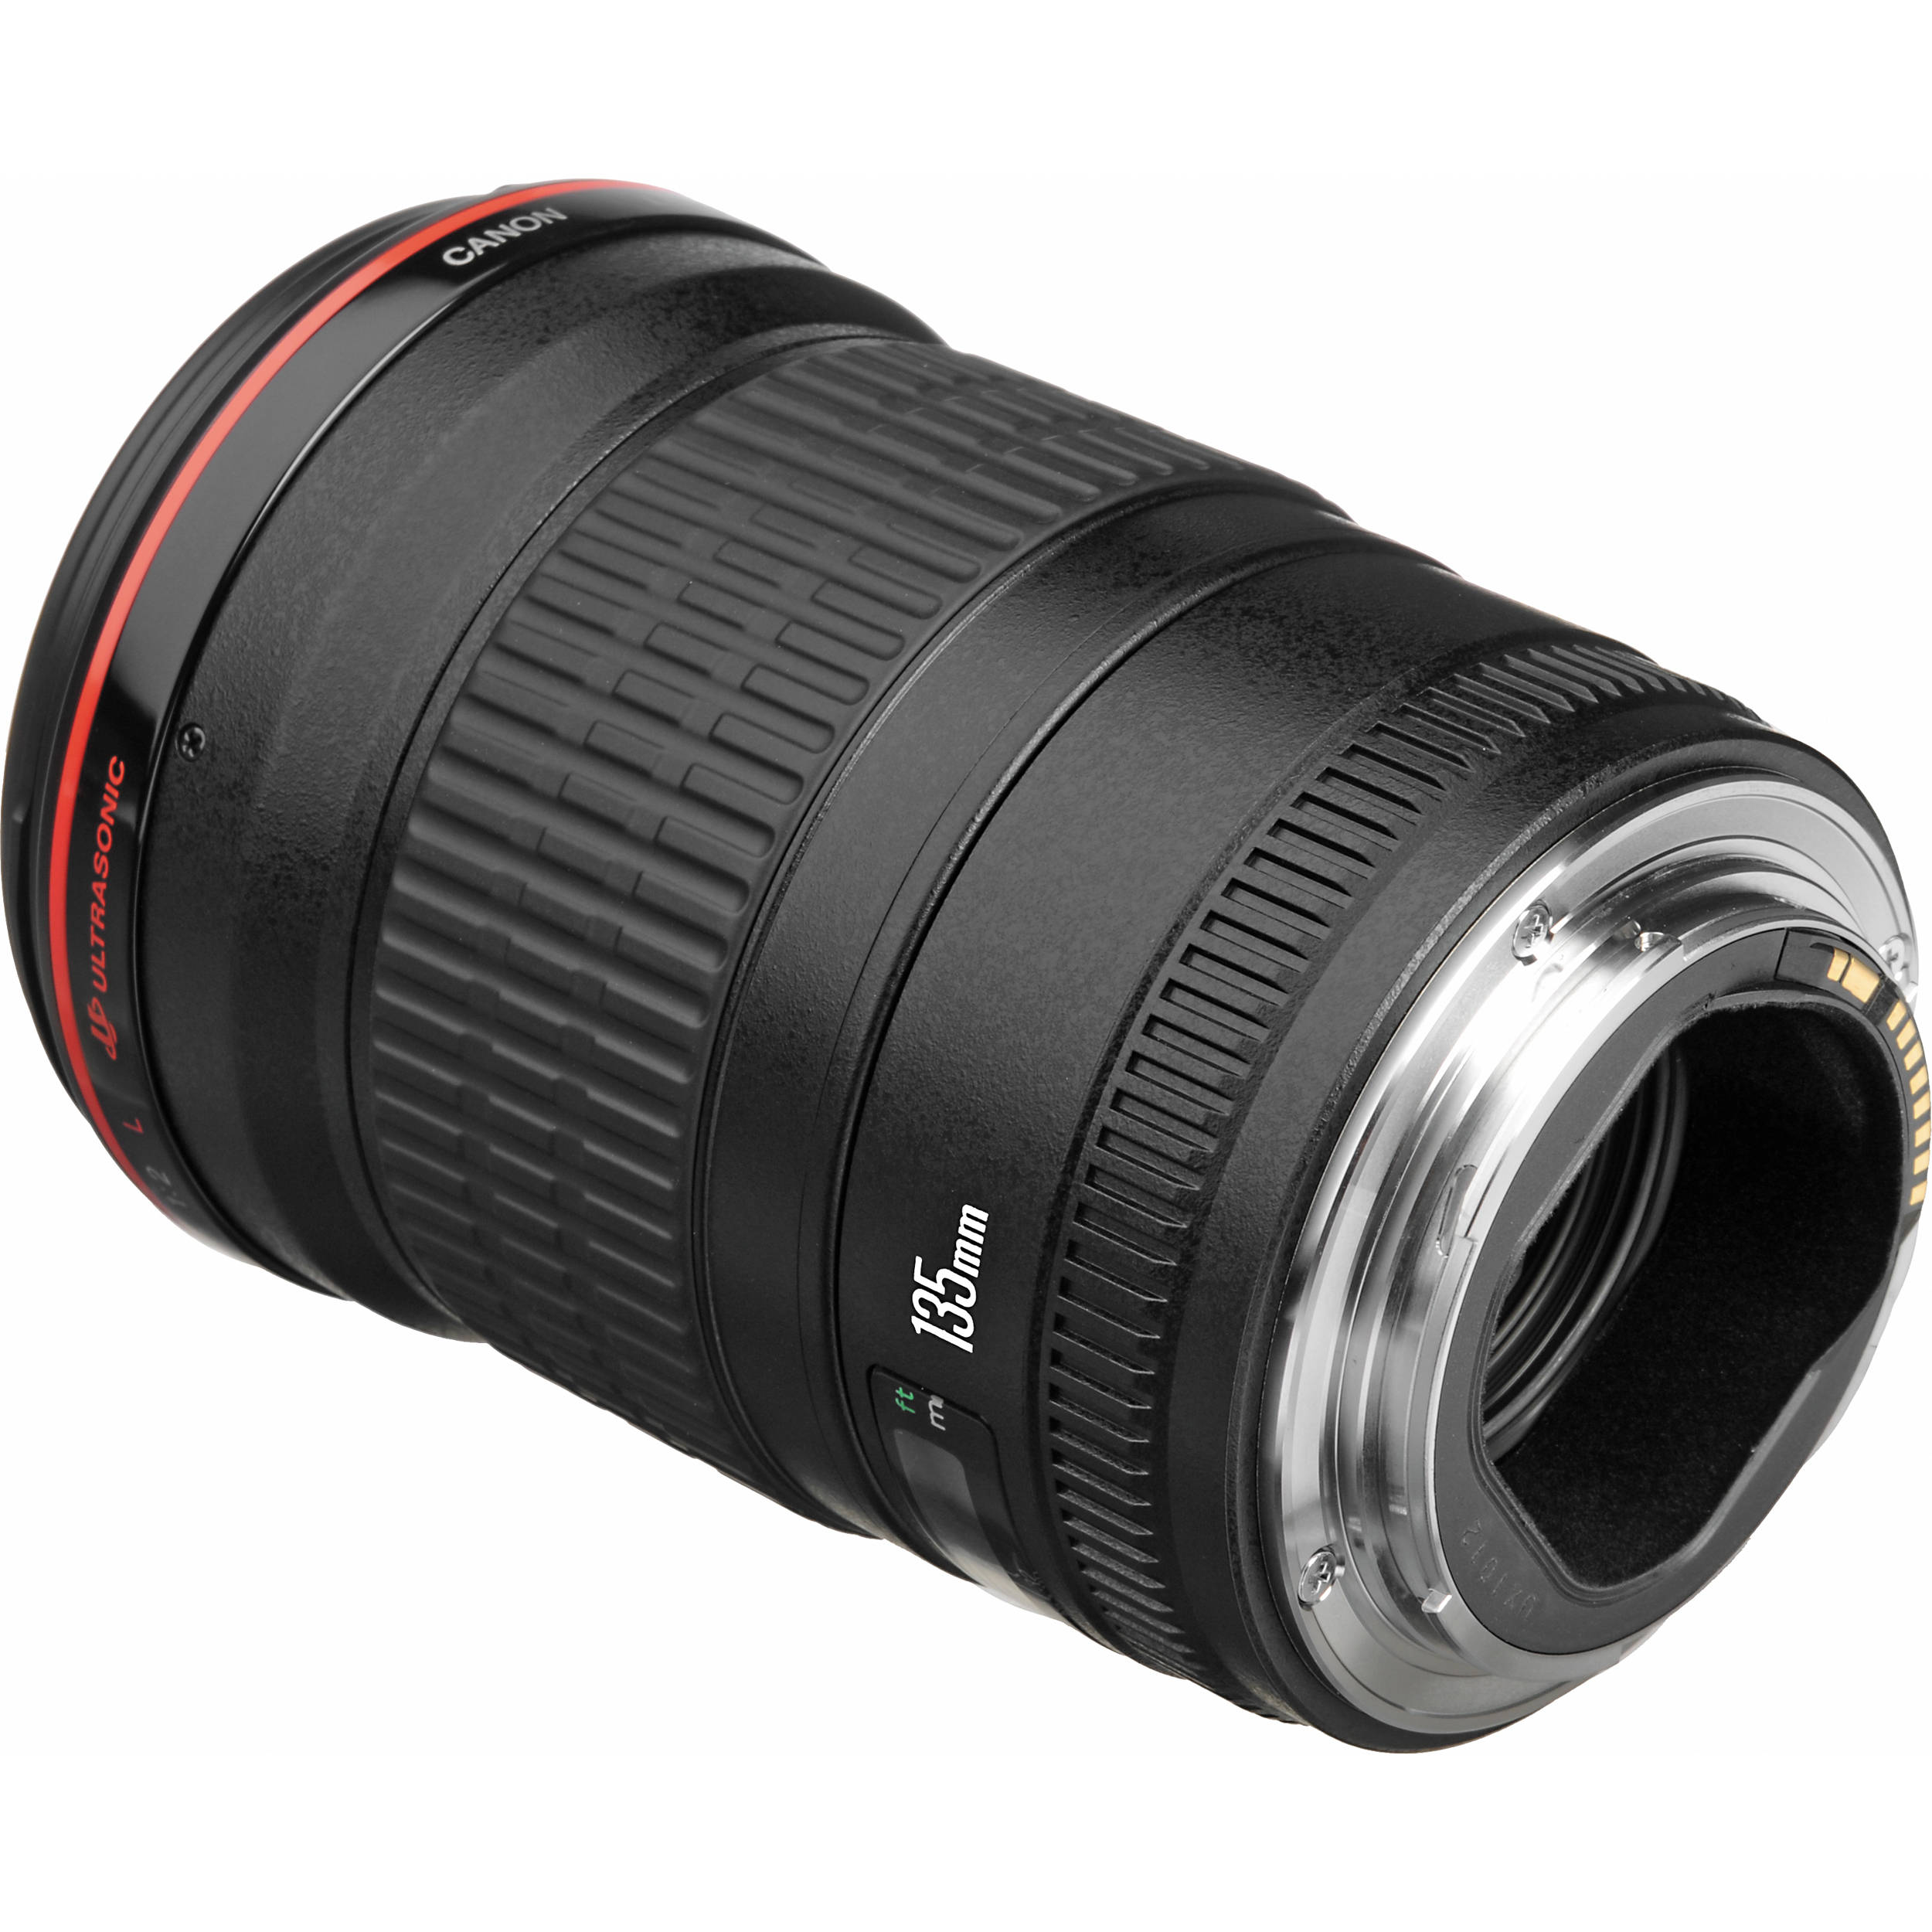 Canon EF 135mm f2L USM có thiết kế sắc nét, trọng lượng nhỏ gọn